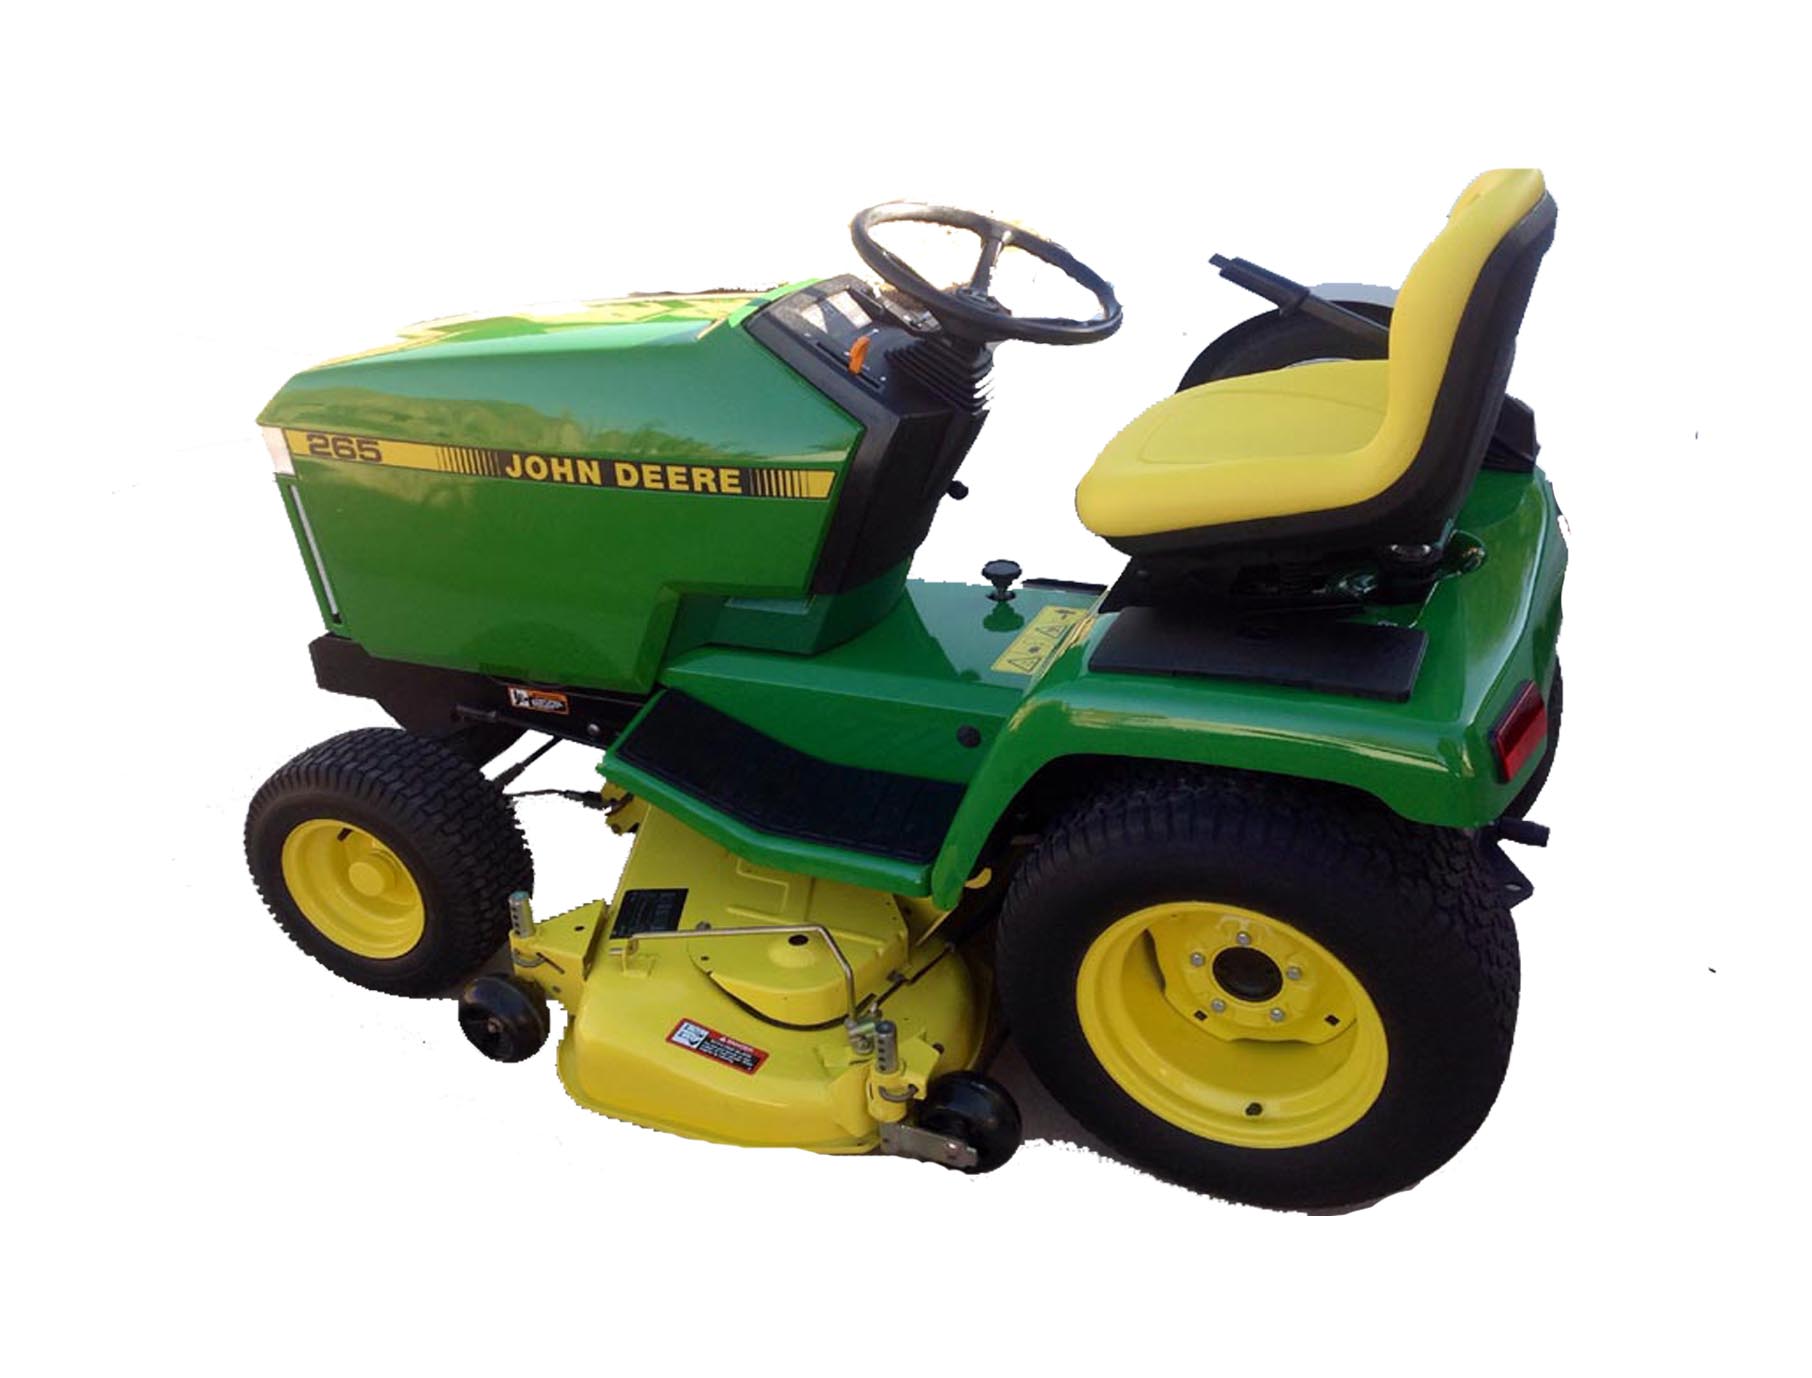 John Deere 265 Lawn Tractor Price Specs